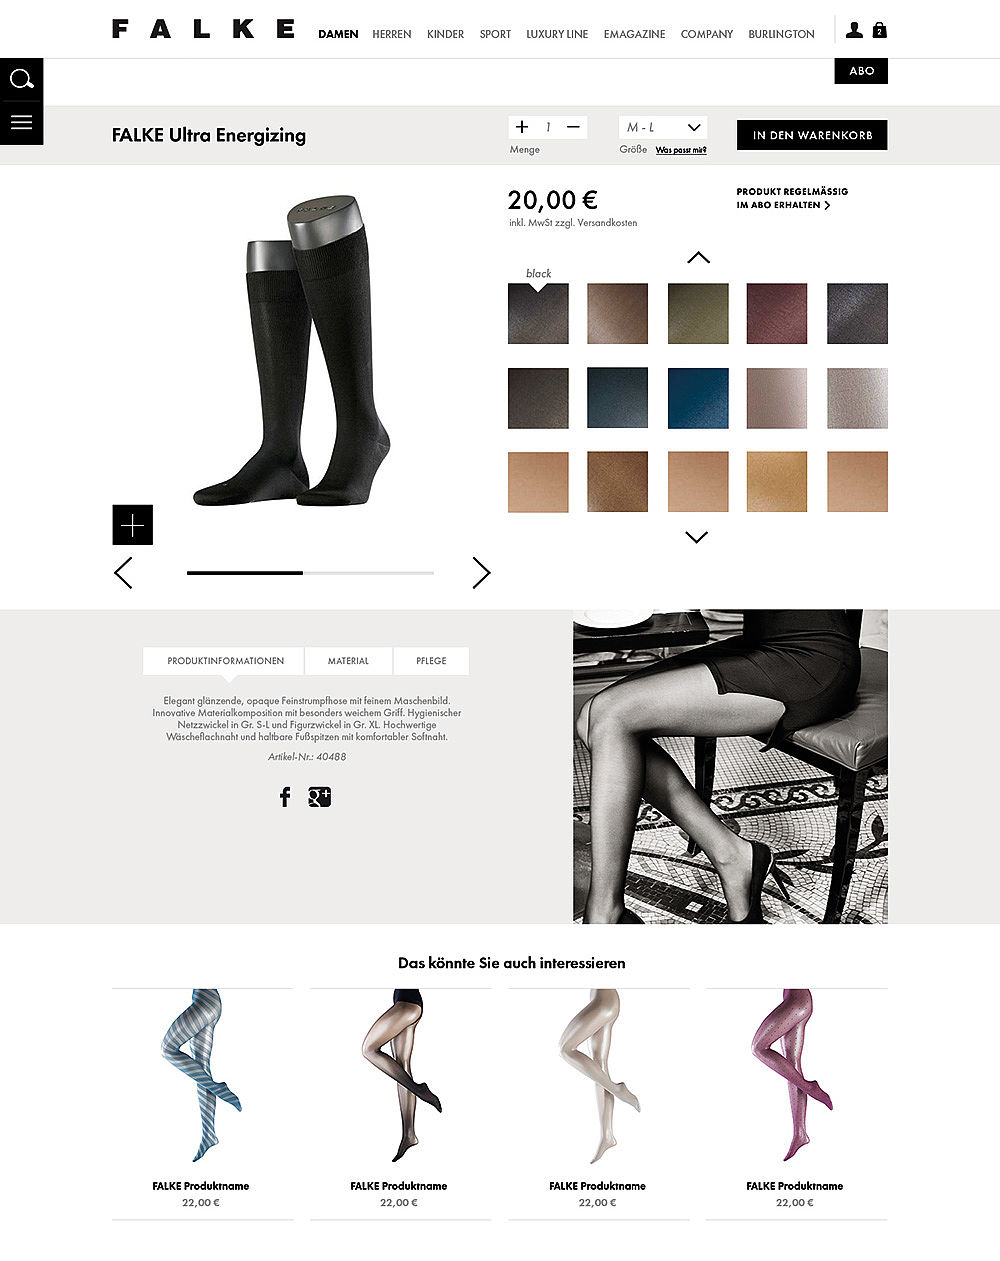 Produktdetailseite mit plakativer Farbauswahl, Produktinformationen und Produktvorschlägen